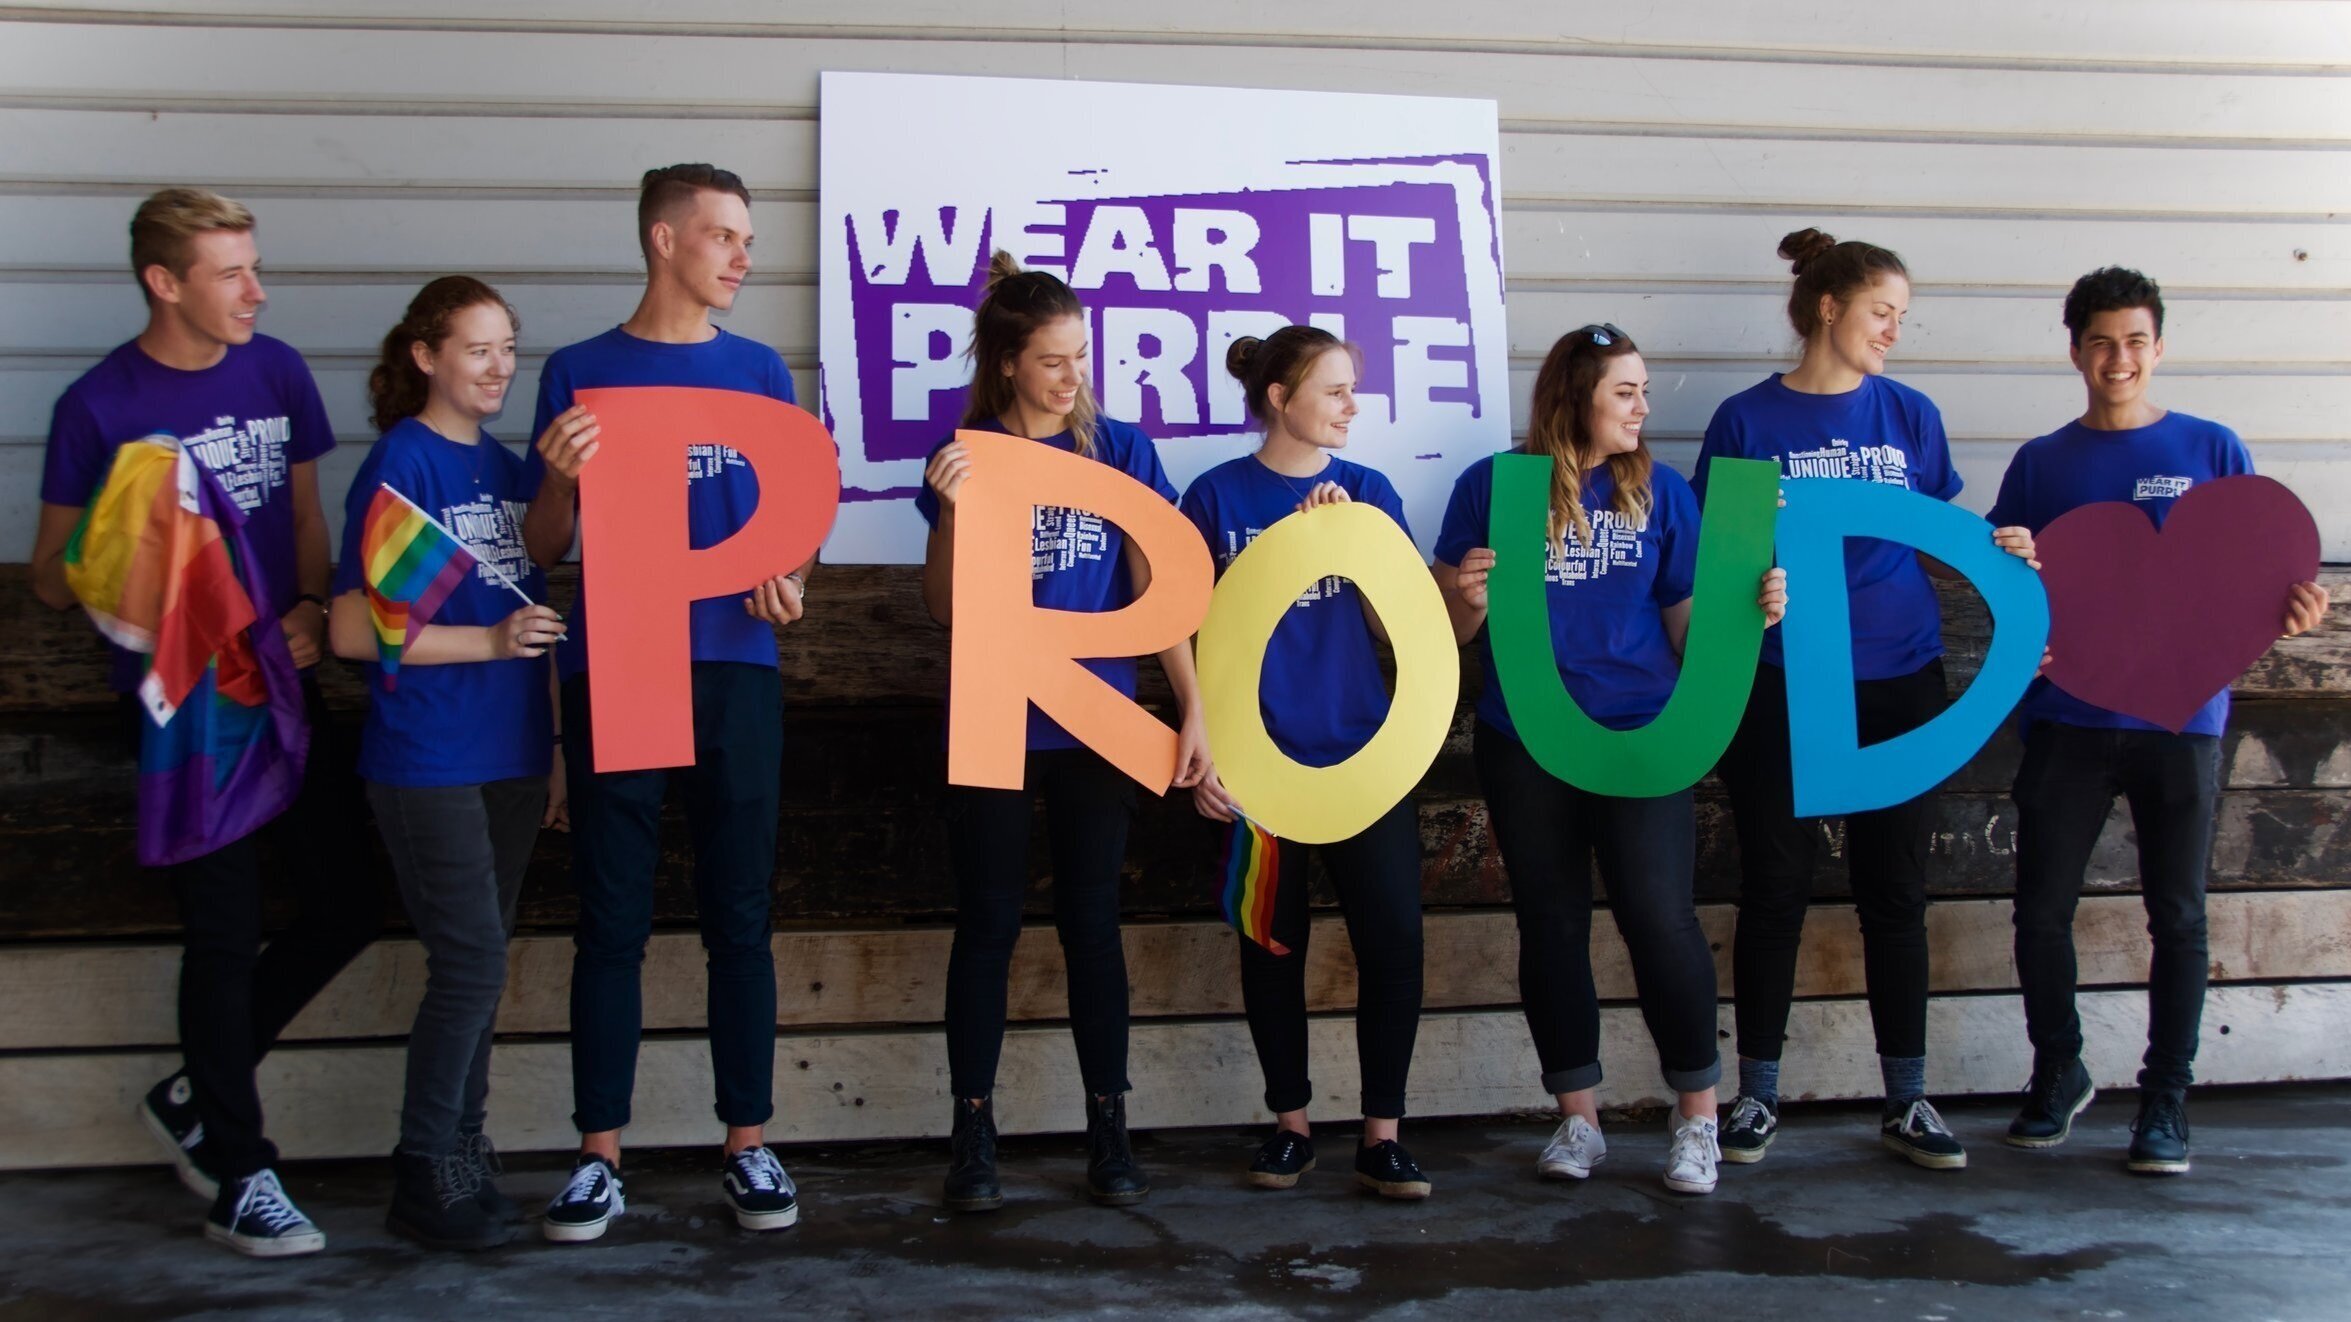 Sự kiện Wear It Purple là một cơ hội để chúng ta cùng nhau thể hiện sự đoàn kết và ủng hộ cộng đồng LGBT. Hãy xem hình ảnh liên quan đến Wear It Purple để cập nhật tin tức và những thông tin hữu ích về sự kiện quan trọng này.